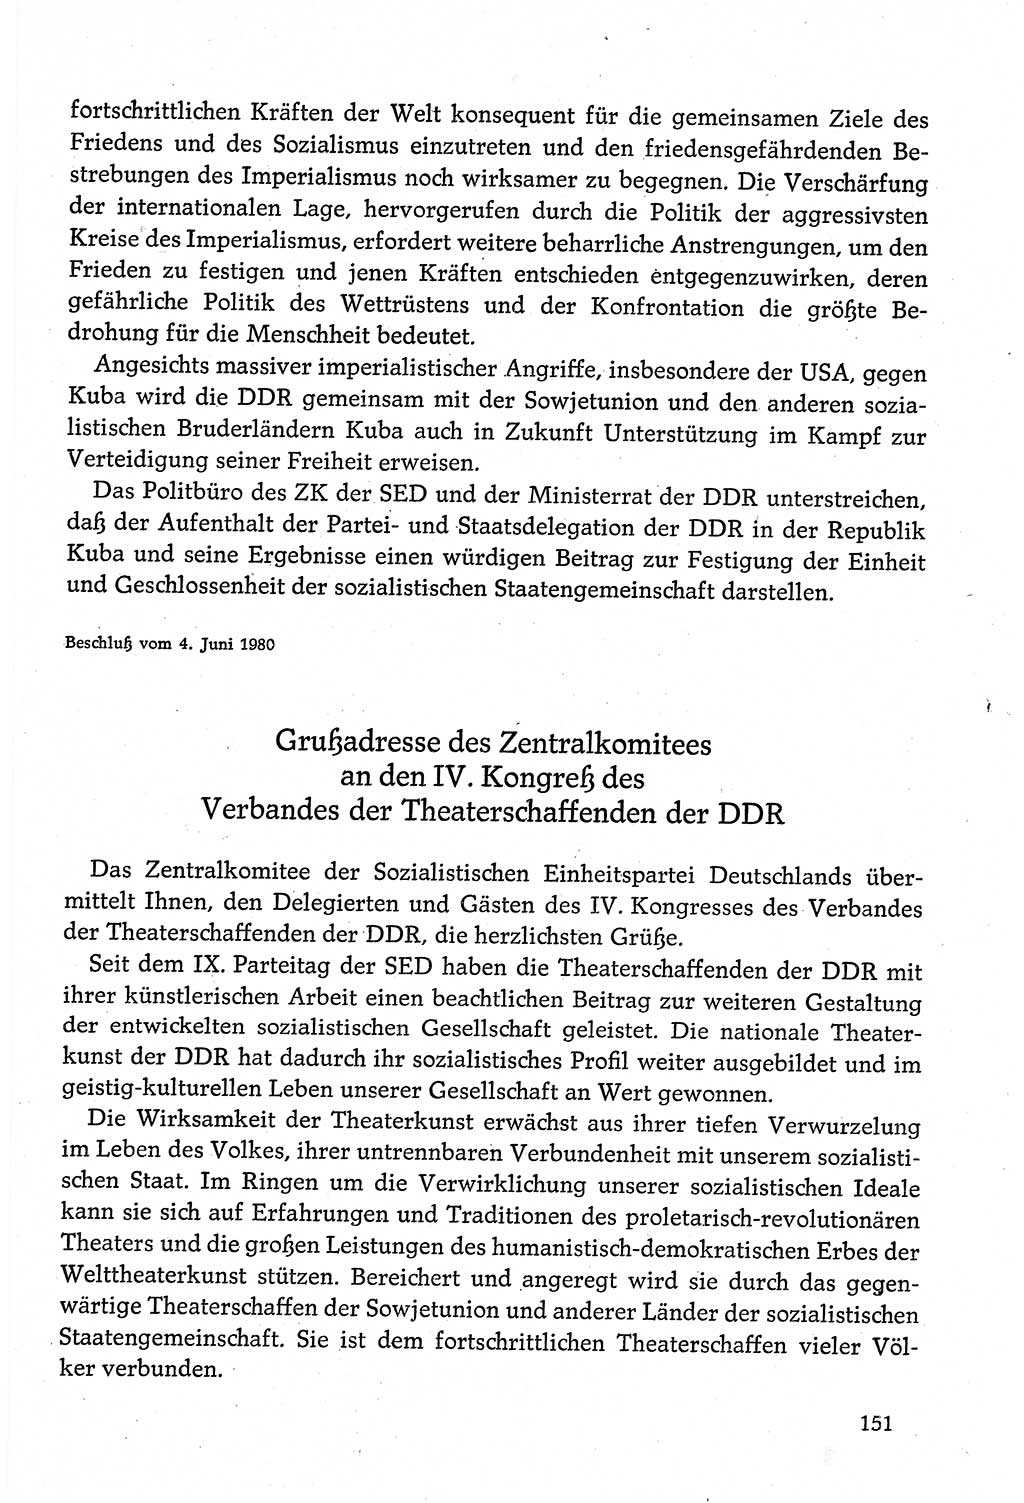 Dokumente der Sozialistischen Einheitspartei Deutschlands (SED) [Deutsche Demokratische Republik (DDR)] 1980-1981, Seite 151 (Dok. SED DDR 1980-1981, S. 151)